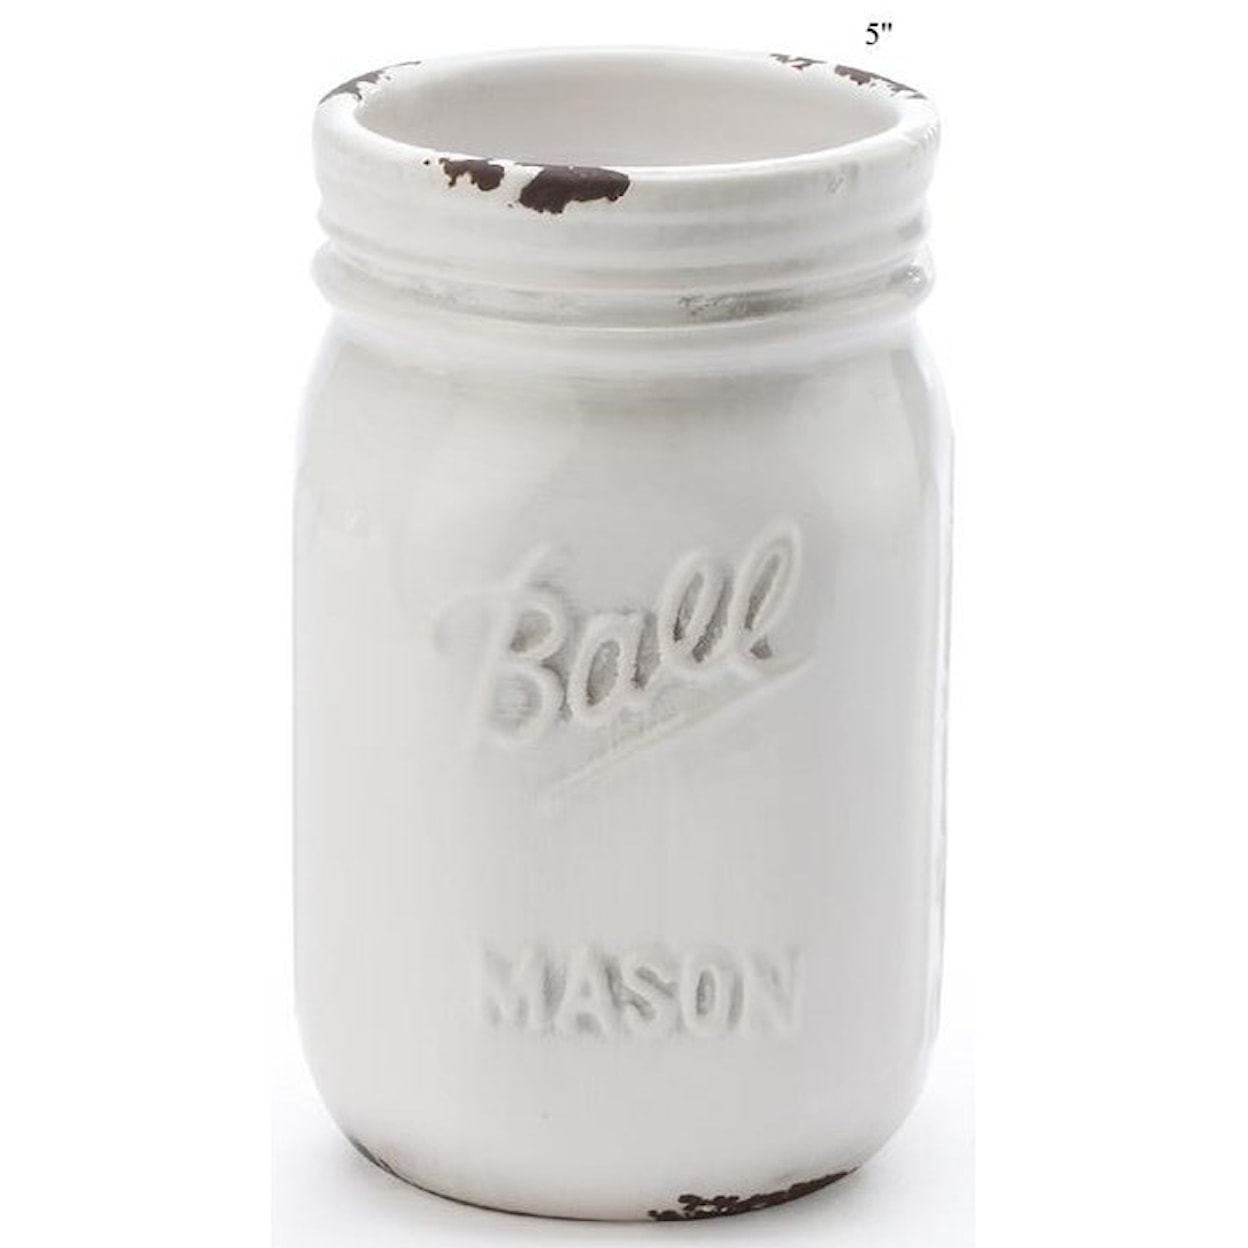 Will's Company Accents 'Ball' Mason Jar - 5"